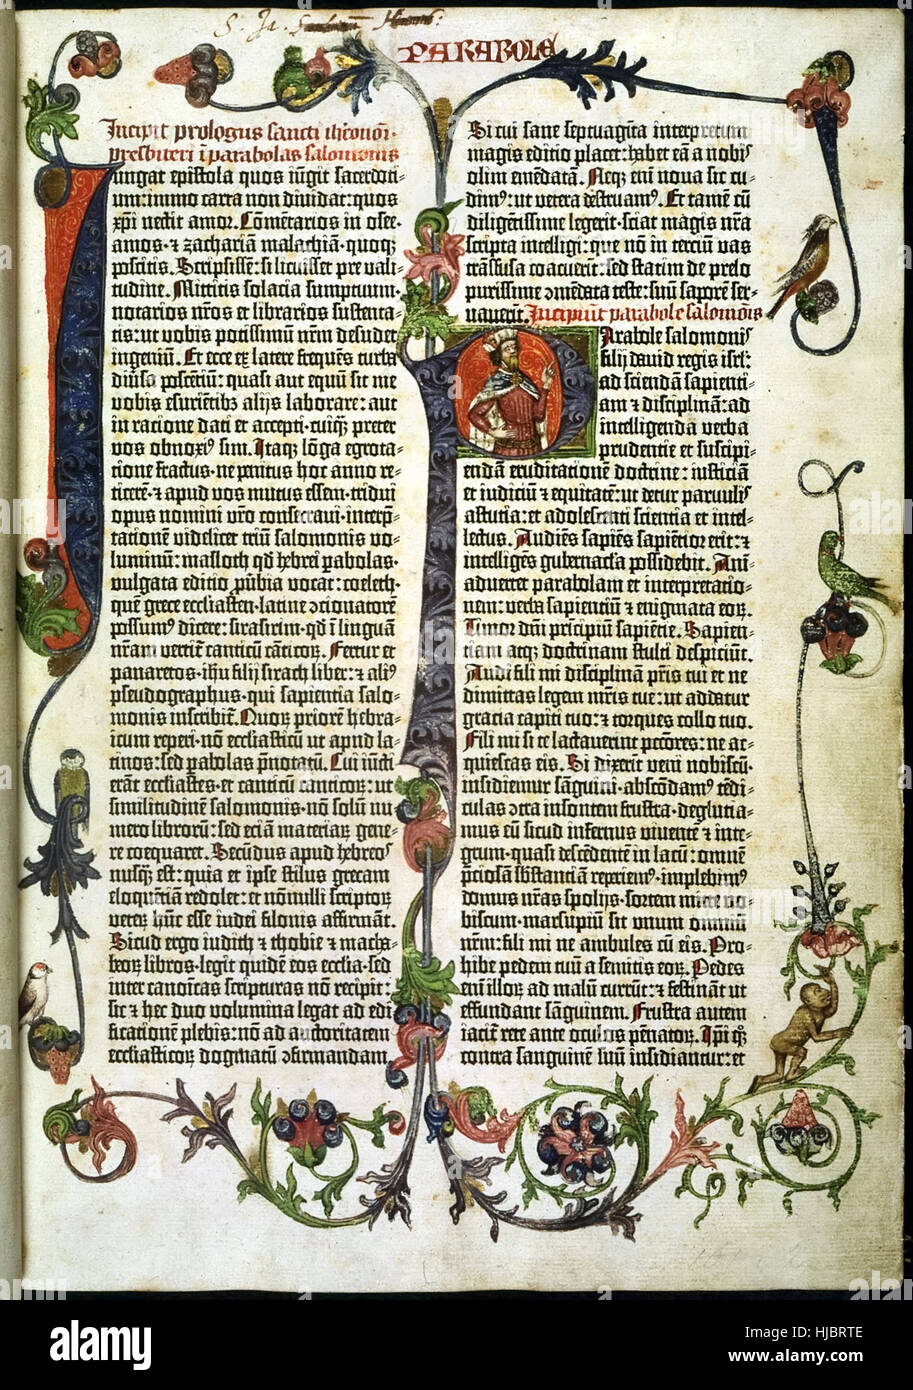 Seite aus der "Gutenberg-Bibel" das erste massenproduzierte Buch gedruckt von Johann Gutenberg 1455 in Mainz, Deutschland. Seite zeigt zeigt eine große beleuchtete 'Ich' und 'P' mit einem Porträt von König Solomon. Siehe Beschreibung für mehr Informationen. Stockfoto